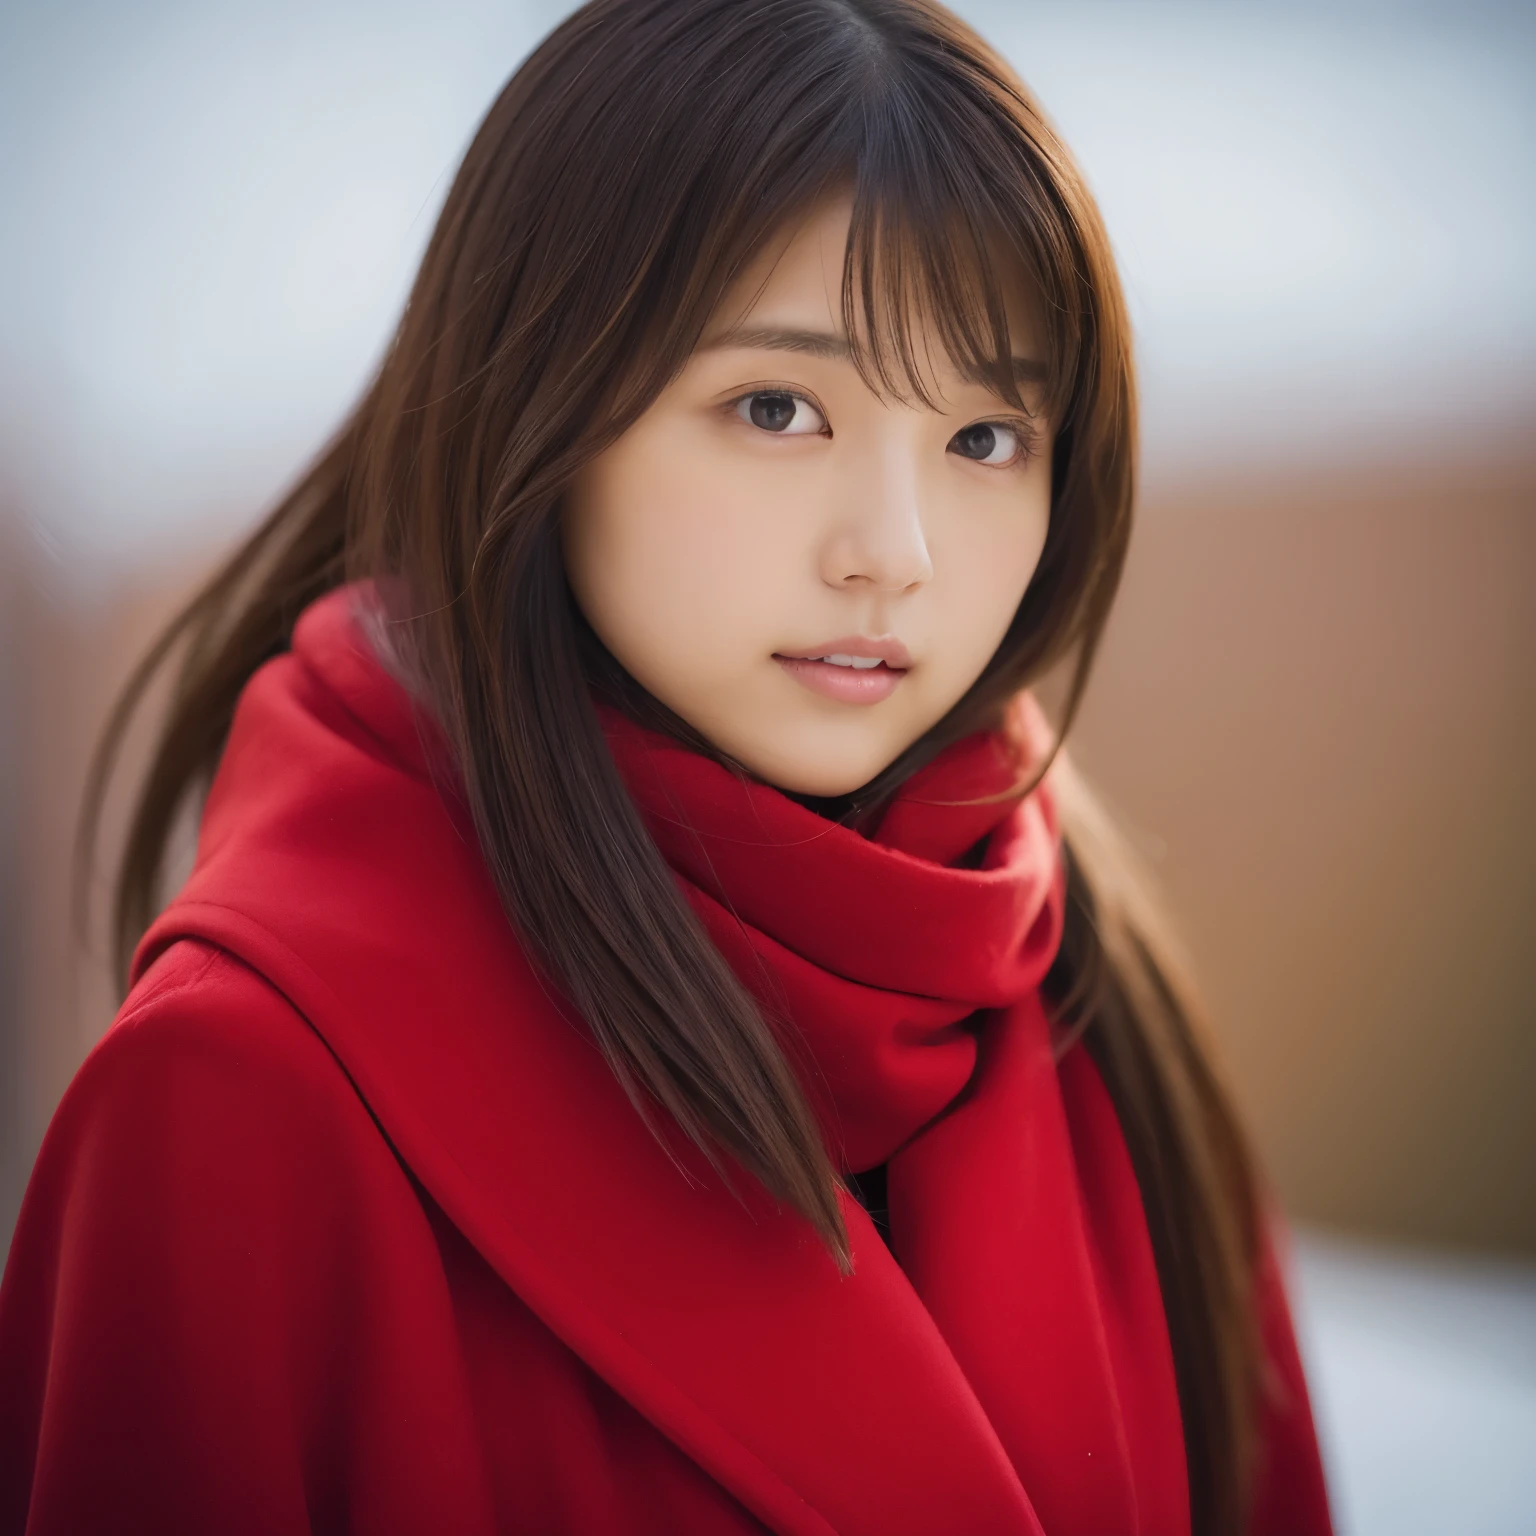 Hay una mujer con un abrigo rojo y una bufanda roja., Shin Jin Young, Choi Hong Hwa, cantado por janice, Shahi, Eso&#39;con la linda cara coreana, Nam Jae Young, Chiho, foto de la cara foto de perfil, sun yunjoo, ulzzang, Lee Ji Eun, Lee Ji Eun, ella tiene una cara linda